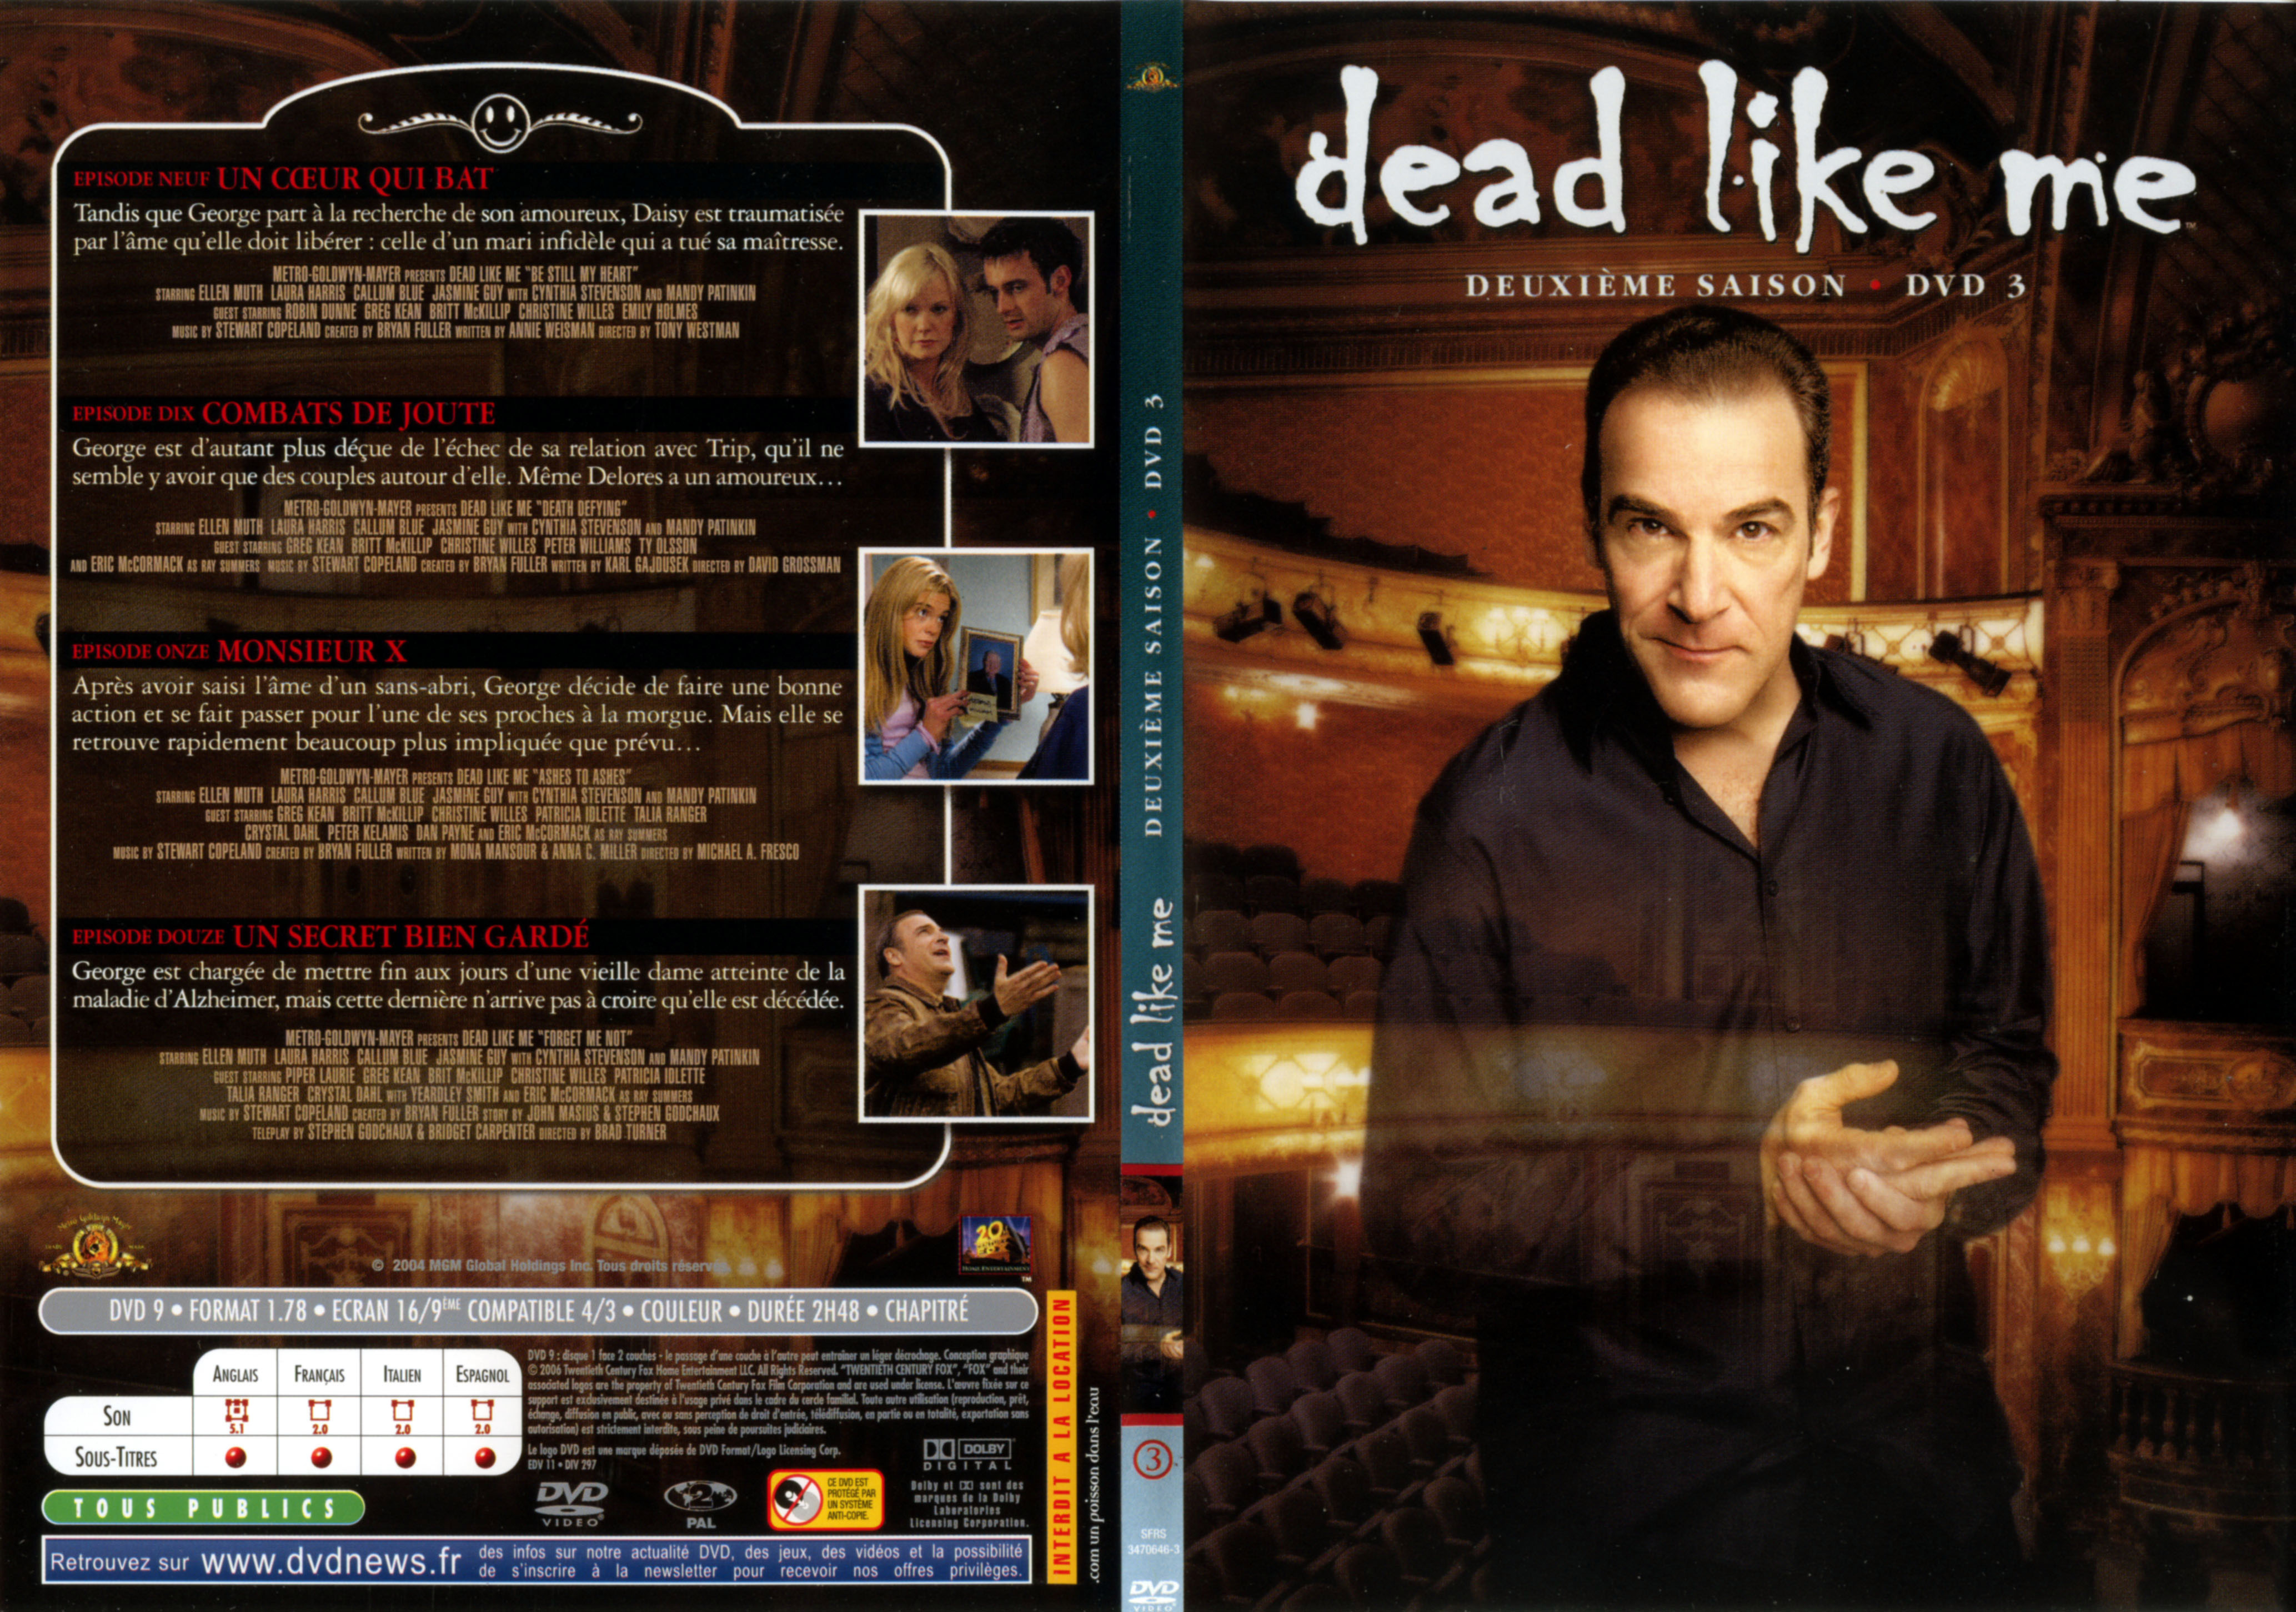 Jaquette DVD Dead like me Saison 2 DVD 3